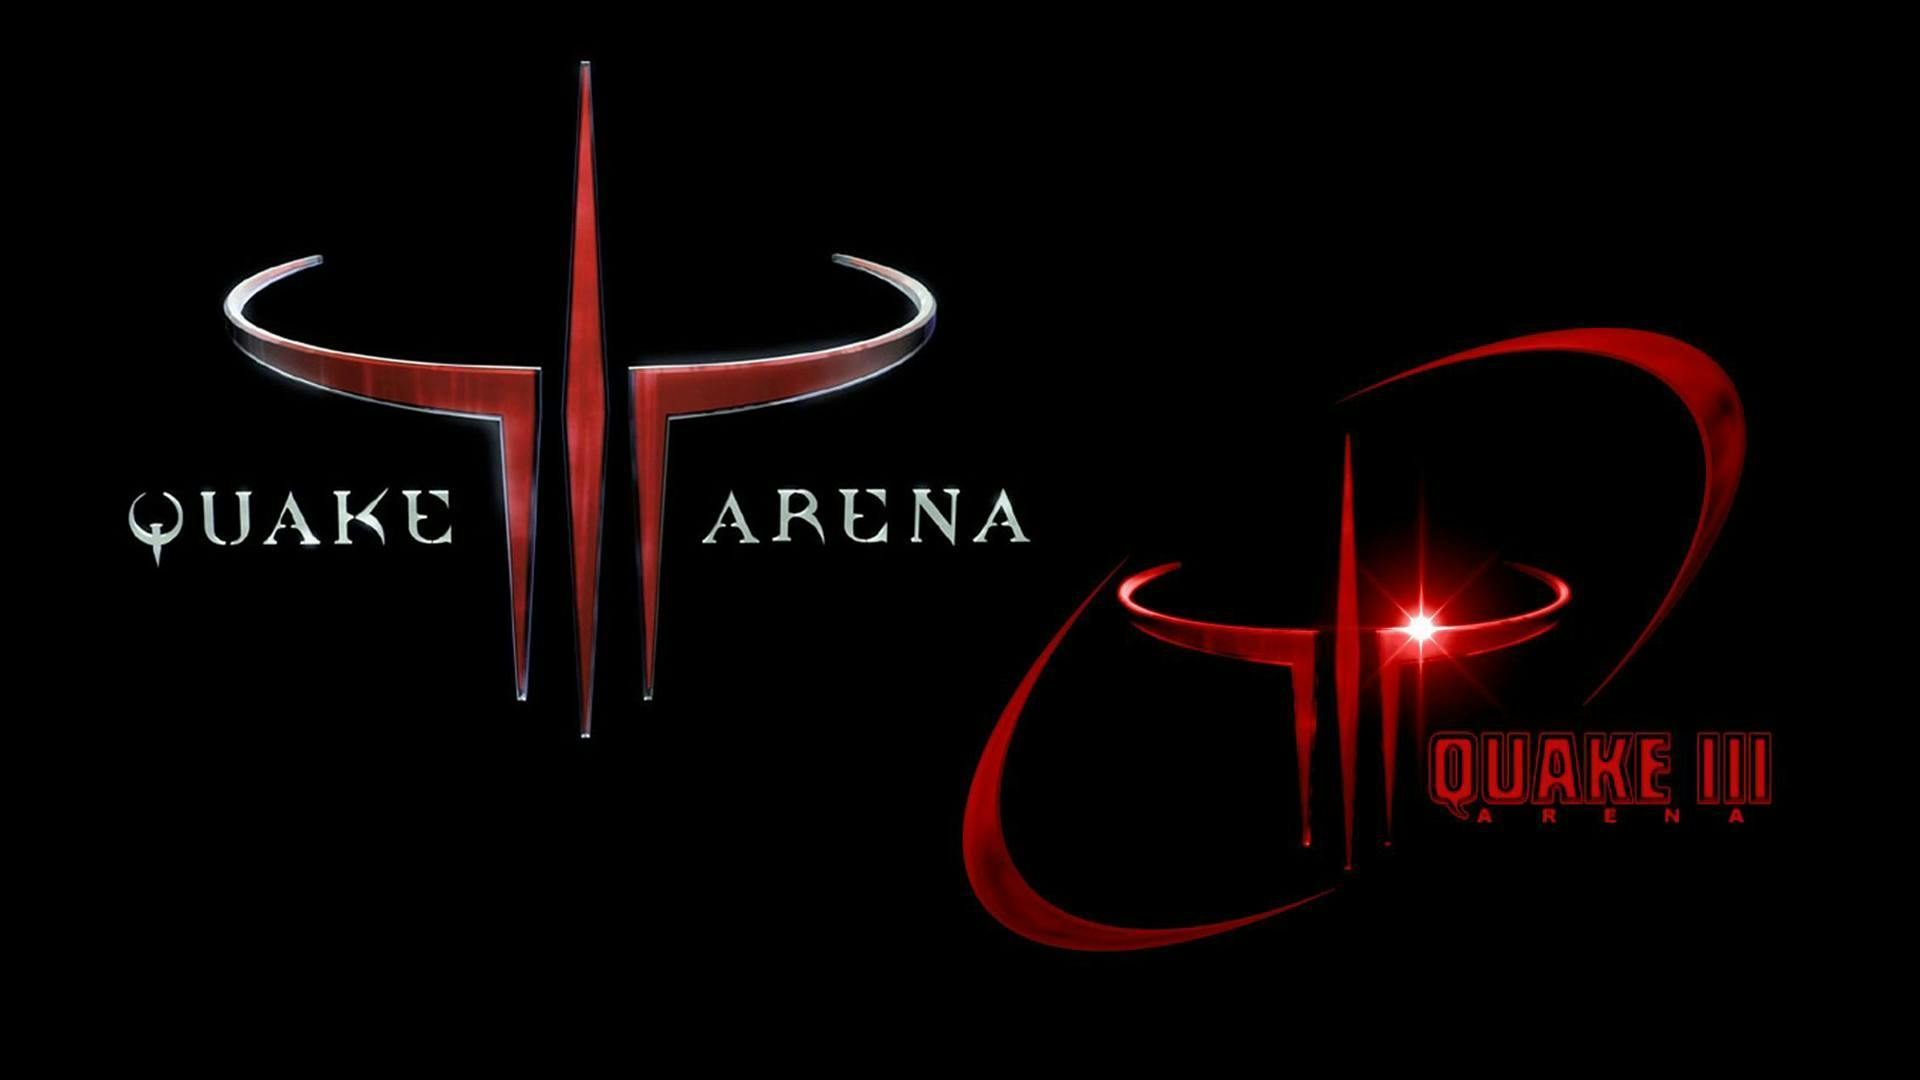 Quake team arena. Quake 3 Arena logo. Quake 3 Team Arena. Quake III Arena. Quake III Team Arena.